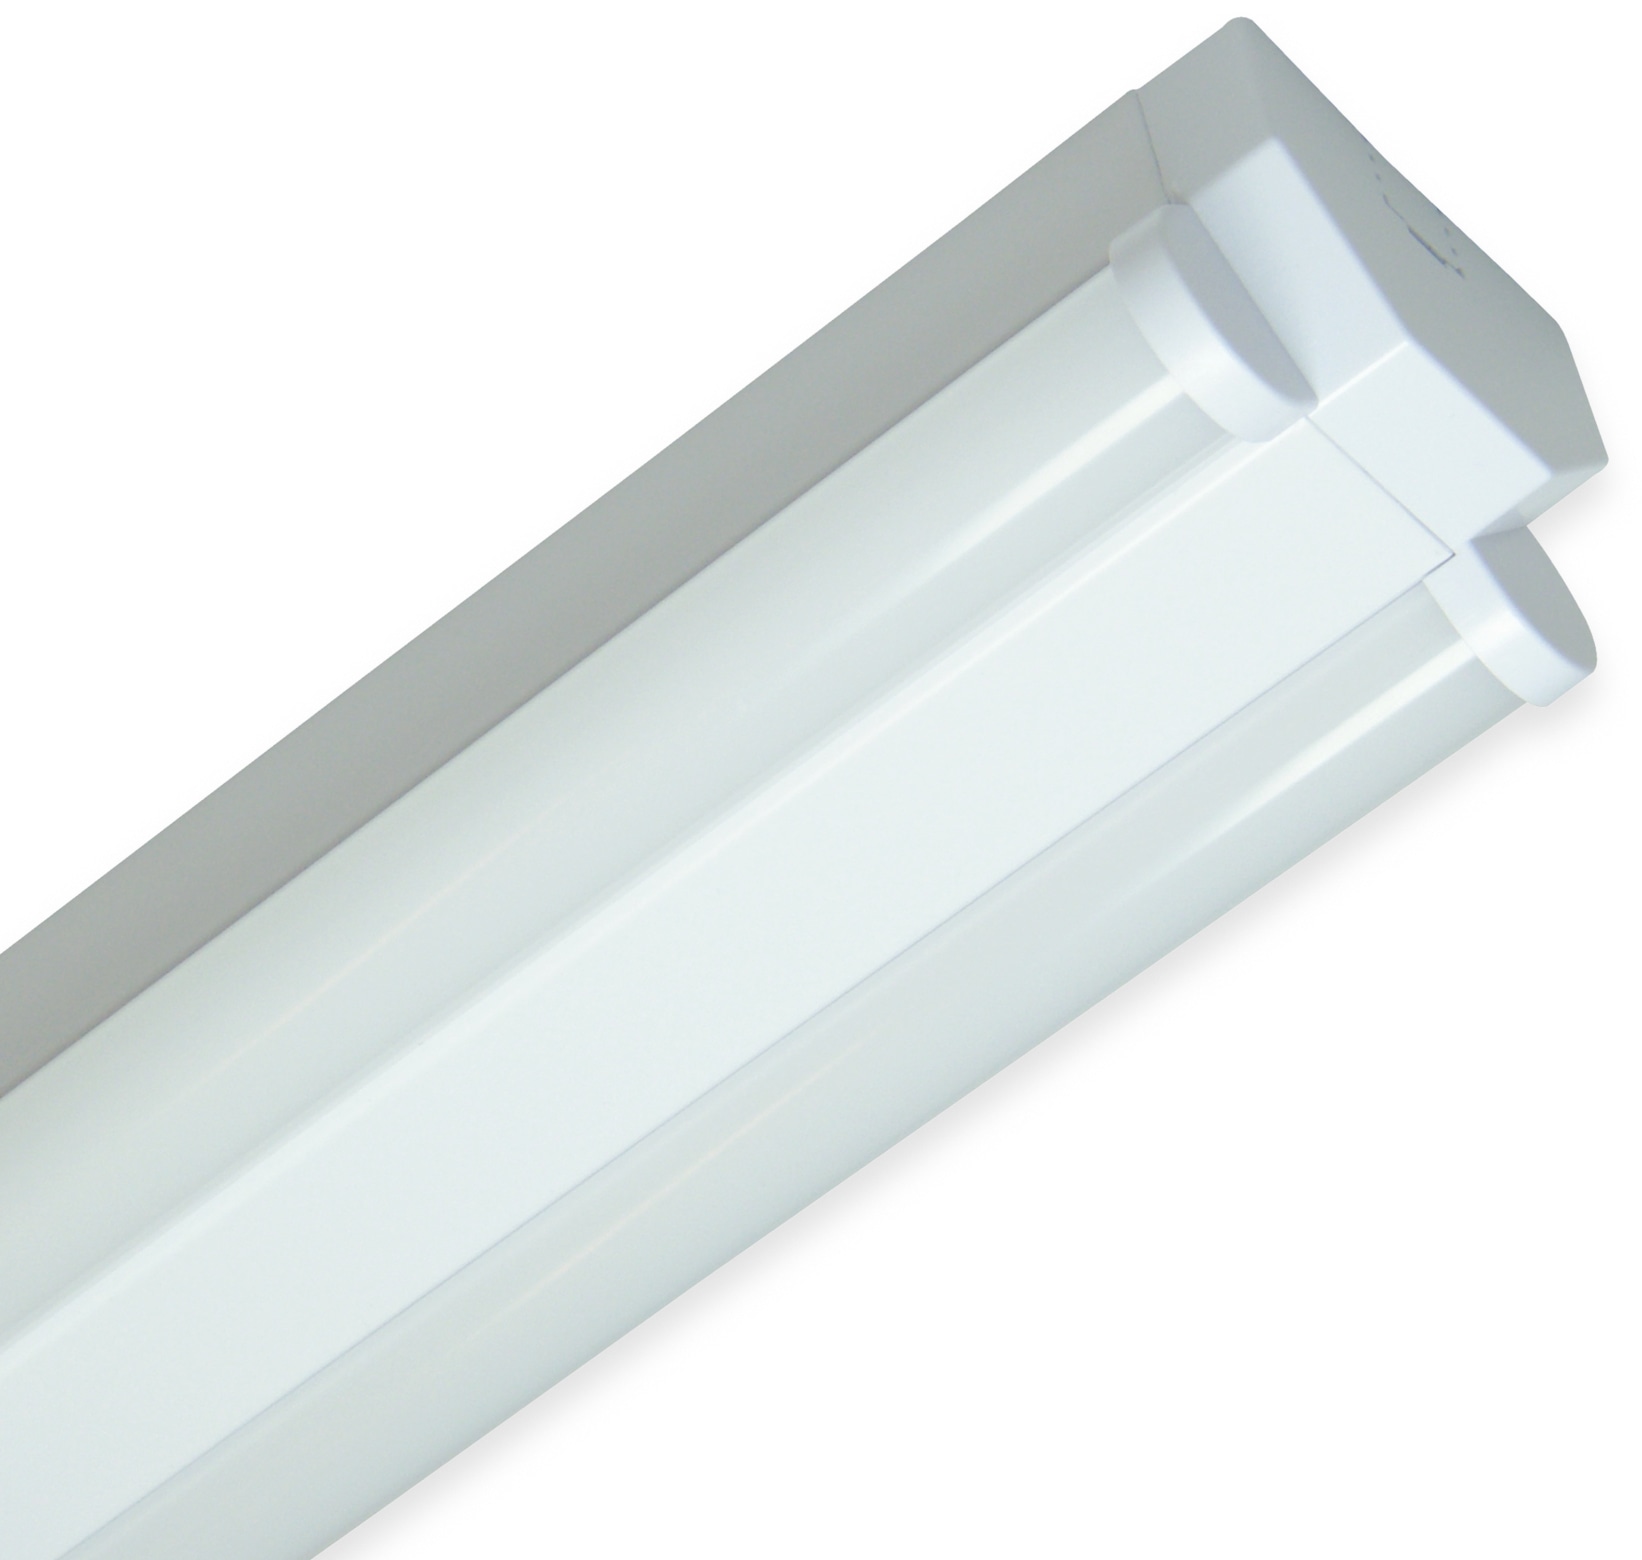 MÜLLER-LICHT LED Wand- und Deckenleuchte, 20300523, Basic 2/150 70 W, 6100 lm, 4000 K, weiß